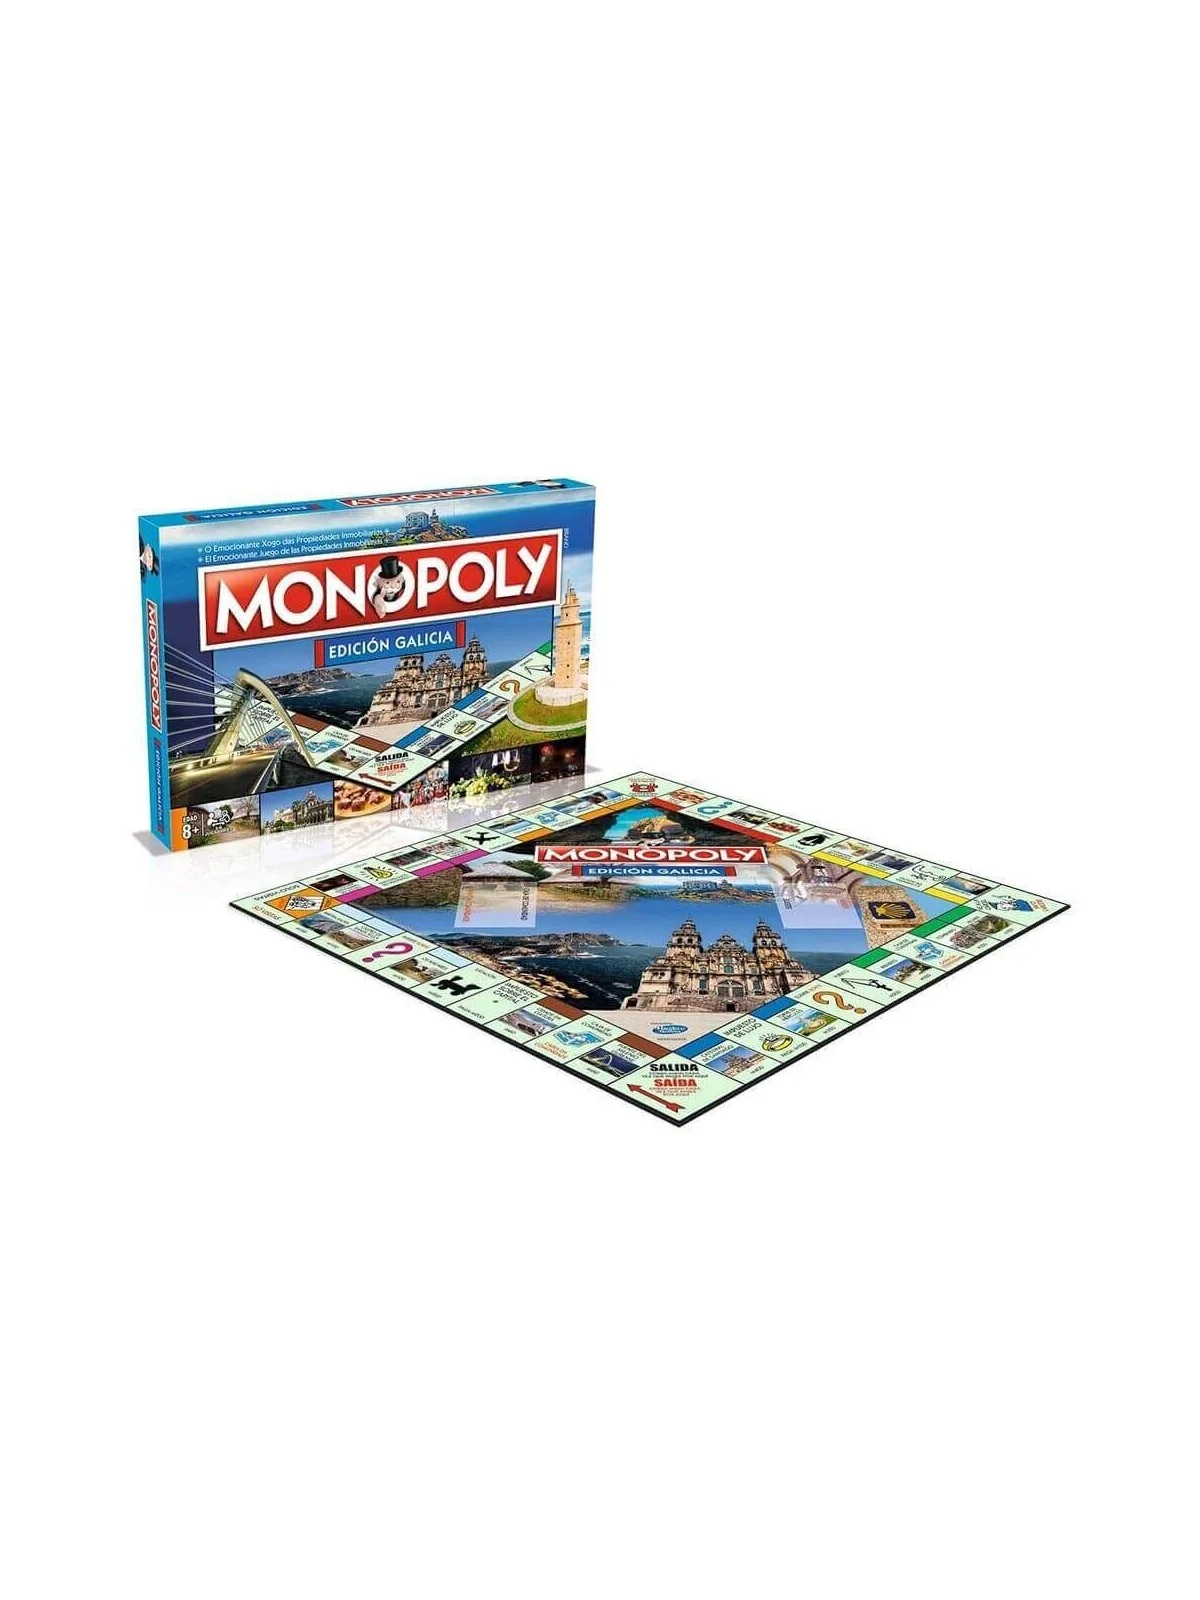 Comprar Monopoly: Galicia barato al mejor precio 35,96 € de Hasbro